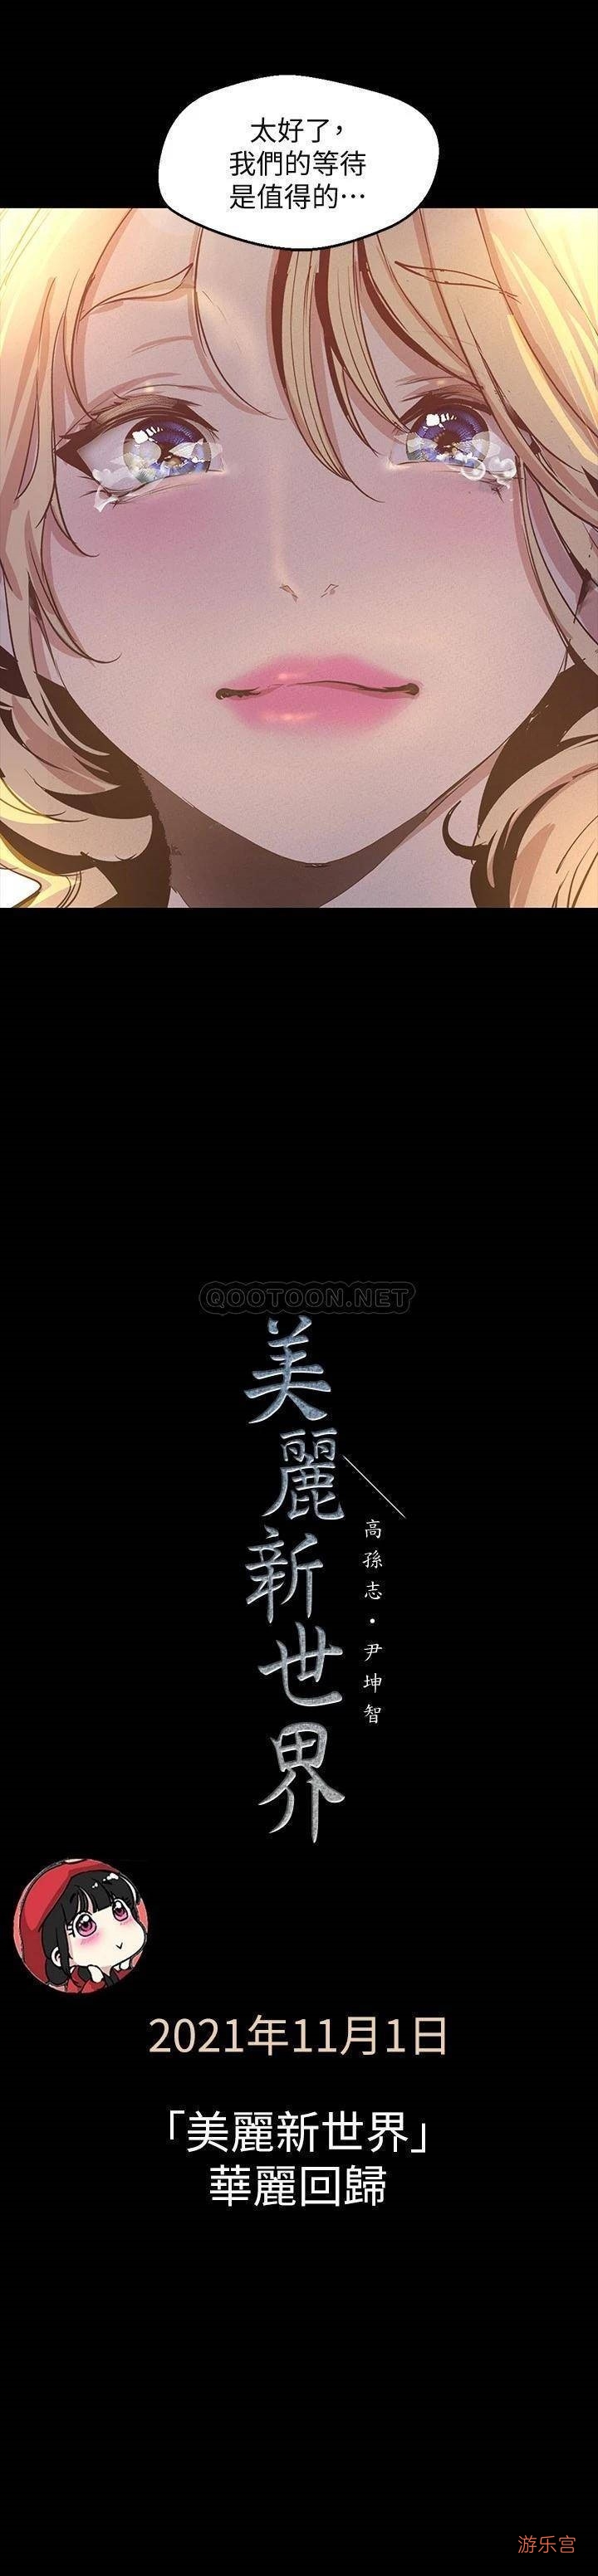 经典韩漫《美丽新世界》11.1日恢复更新了-h漫-『游乐宫』Youlegong.com 第6张